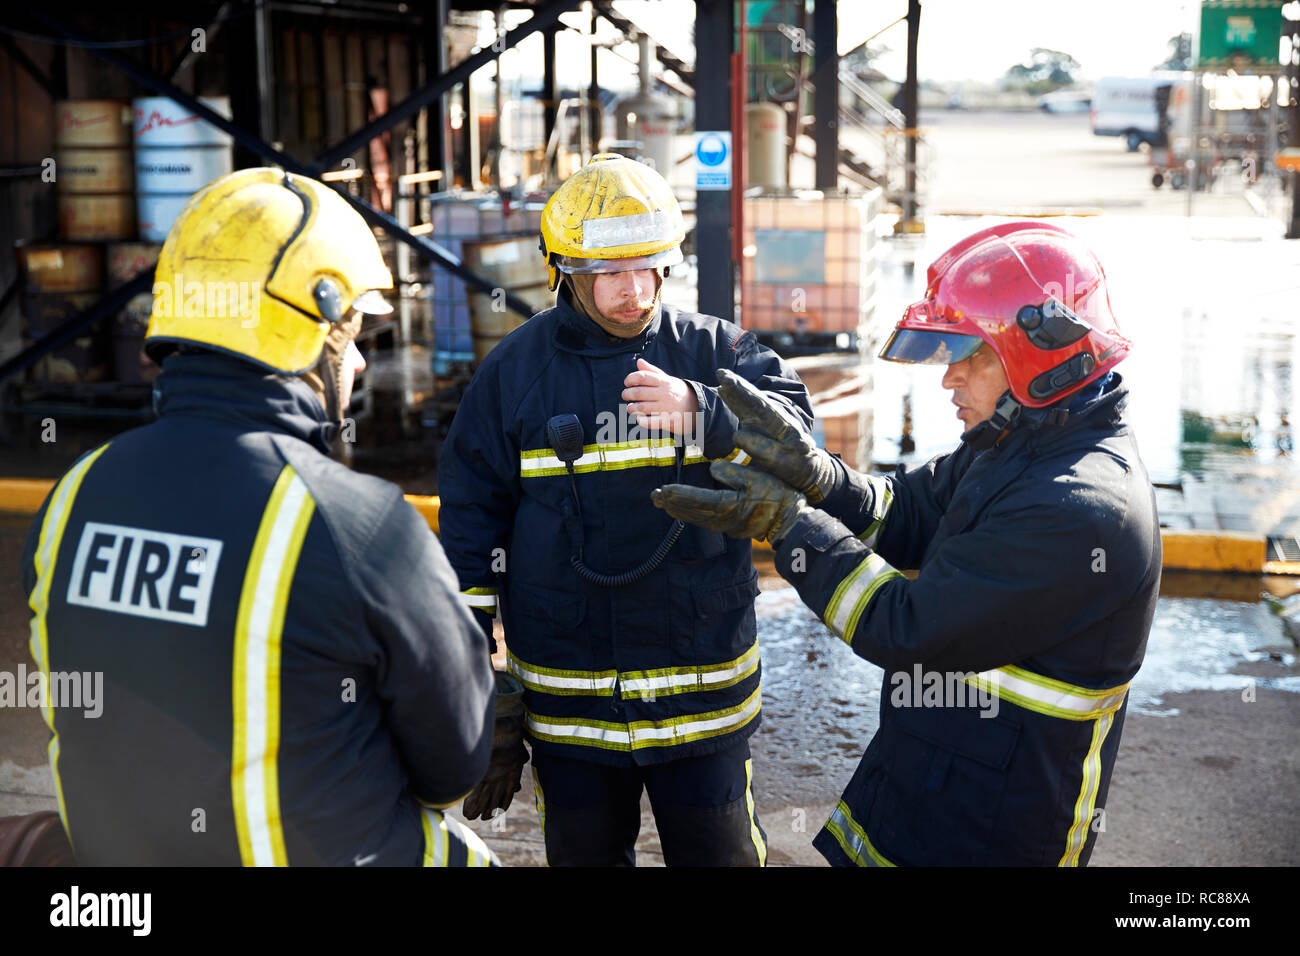 Los bomberos en la discusión en el centro de formación, Darlington, REINO UNIDO Foto de stock